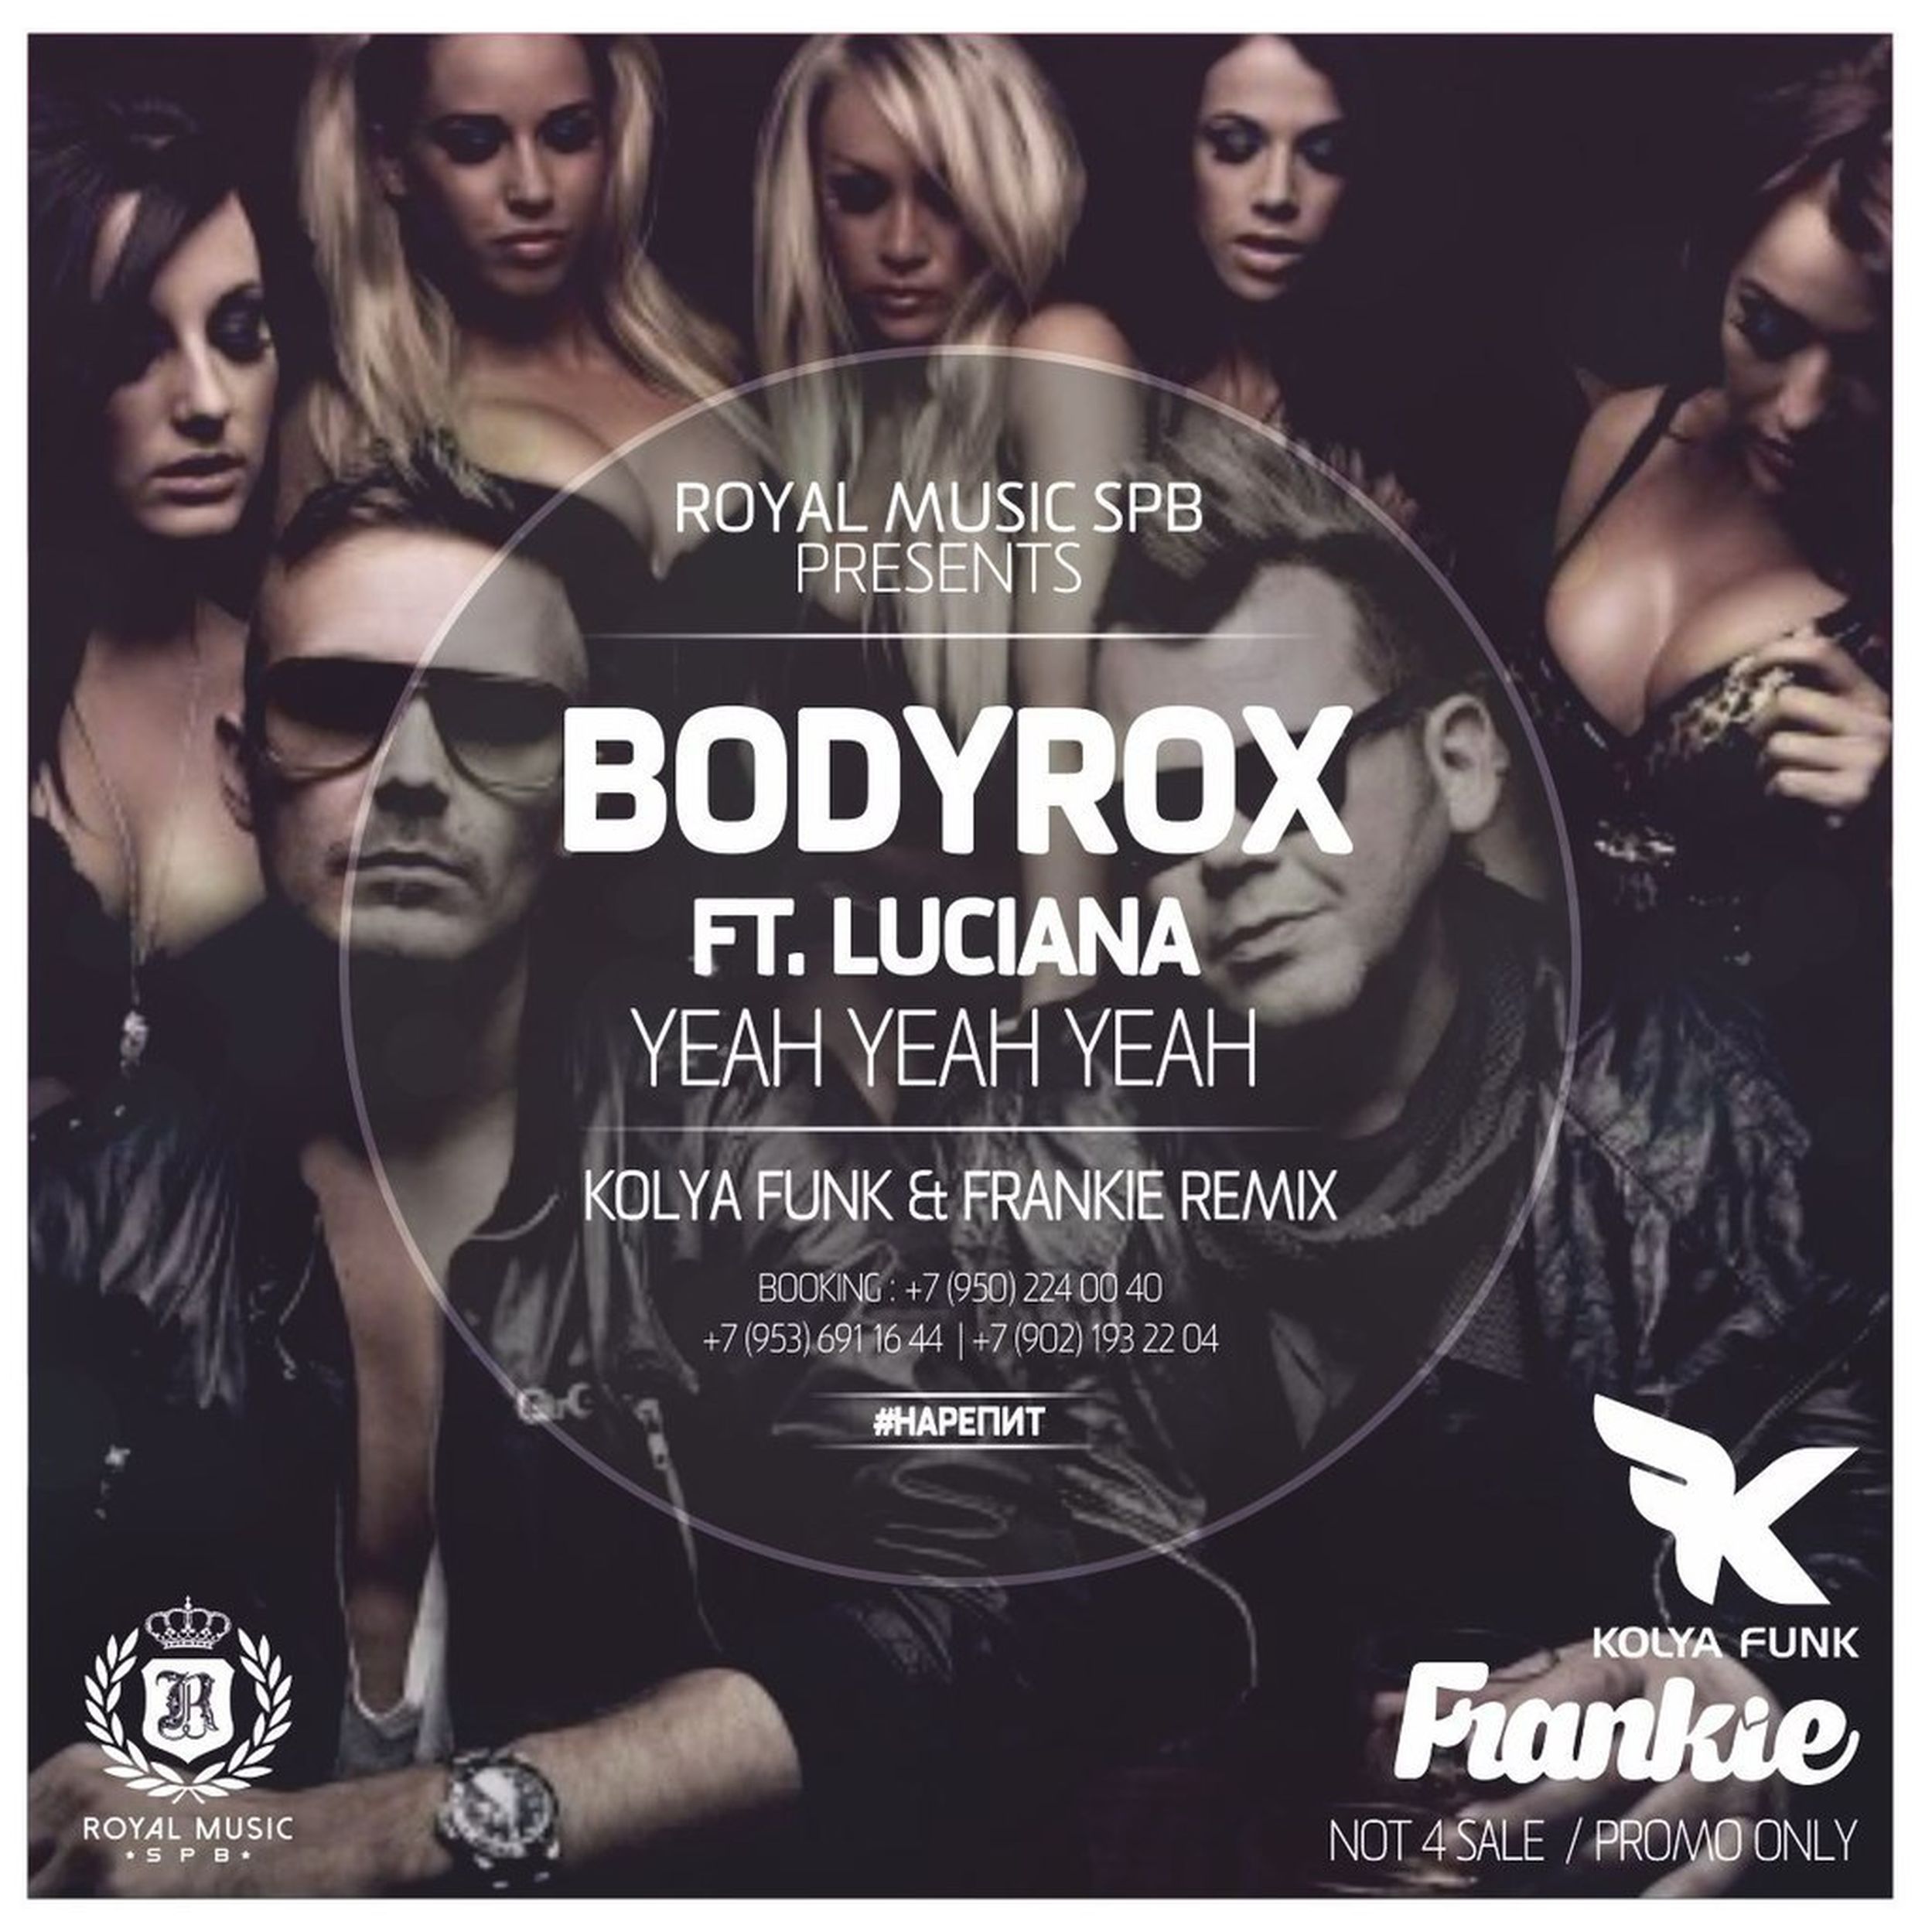 Royalty remix. Luciana yeah yeah. Bodyrox ft. Luciana. Коля фанк. Bodyrox yeah yeah.